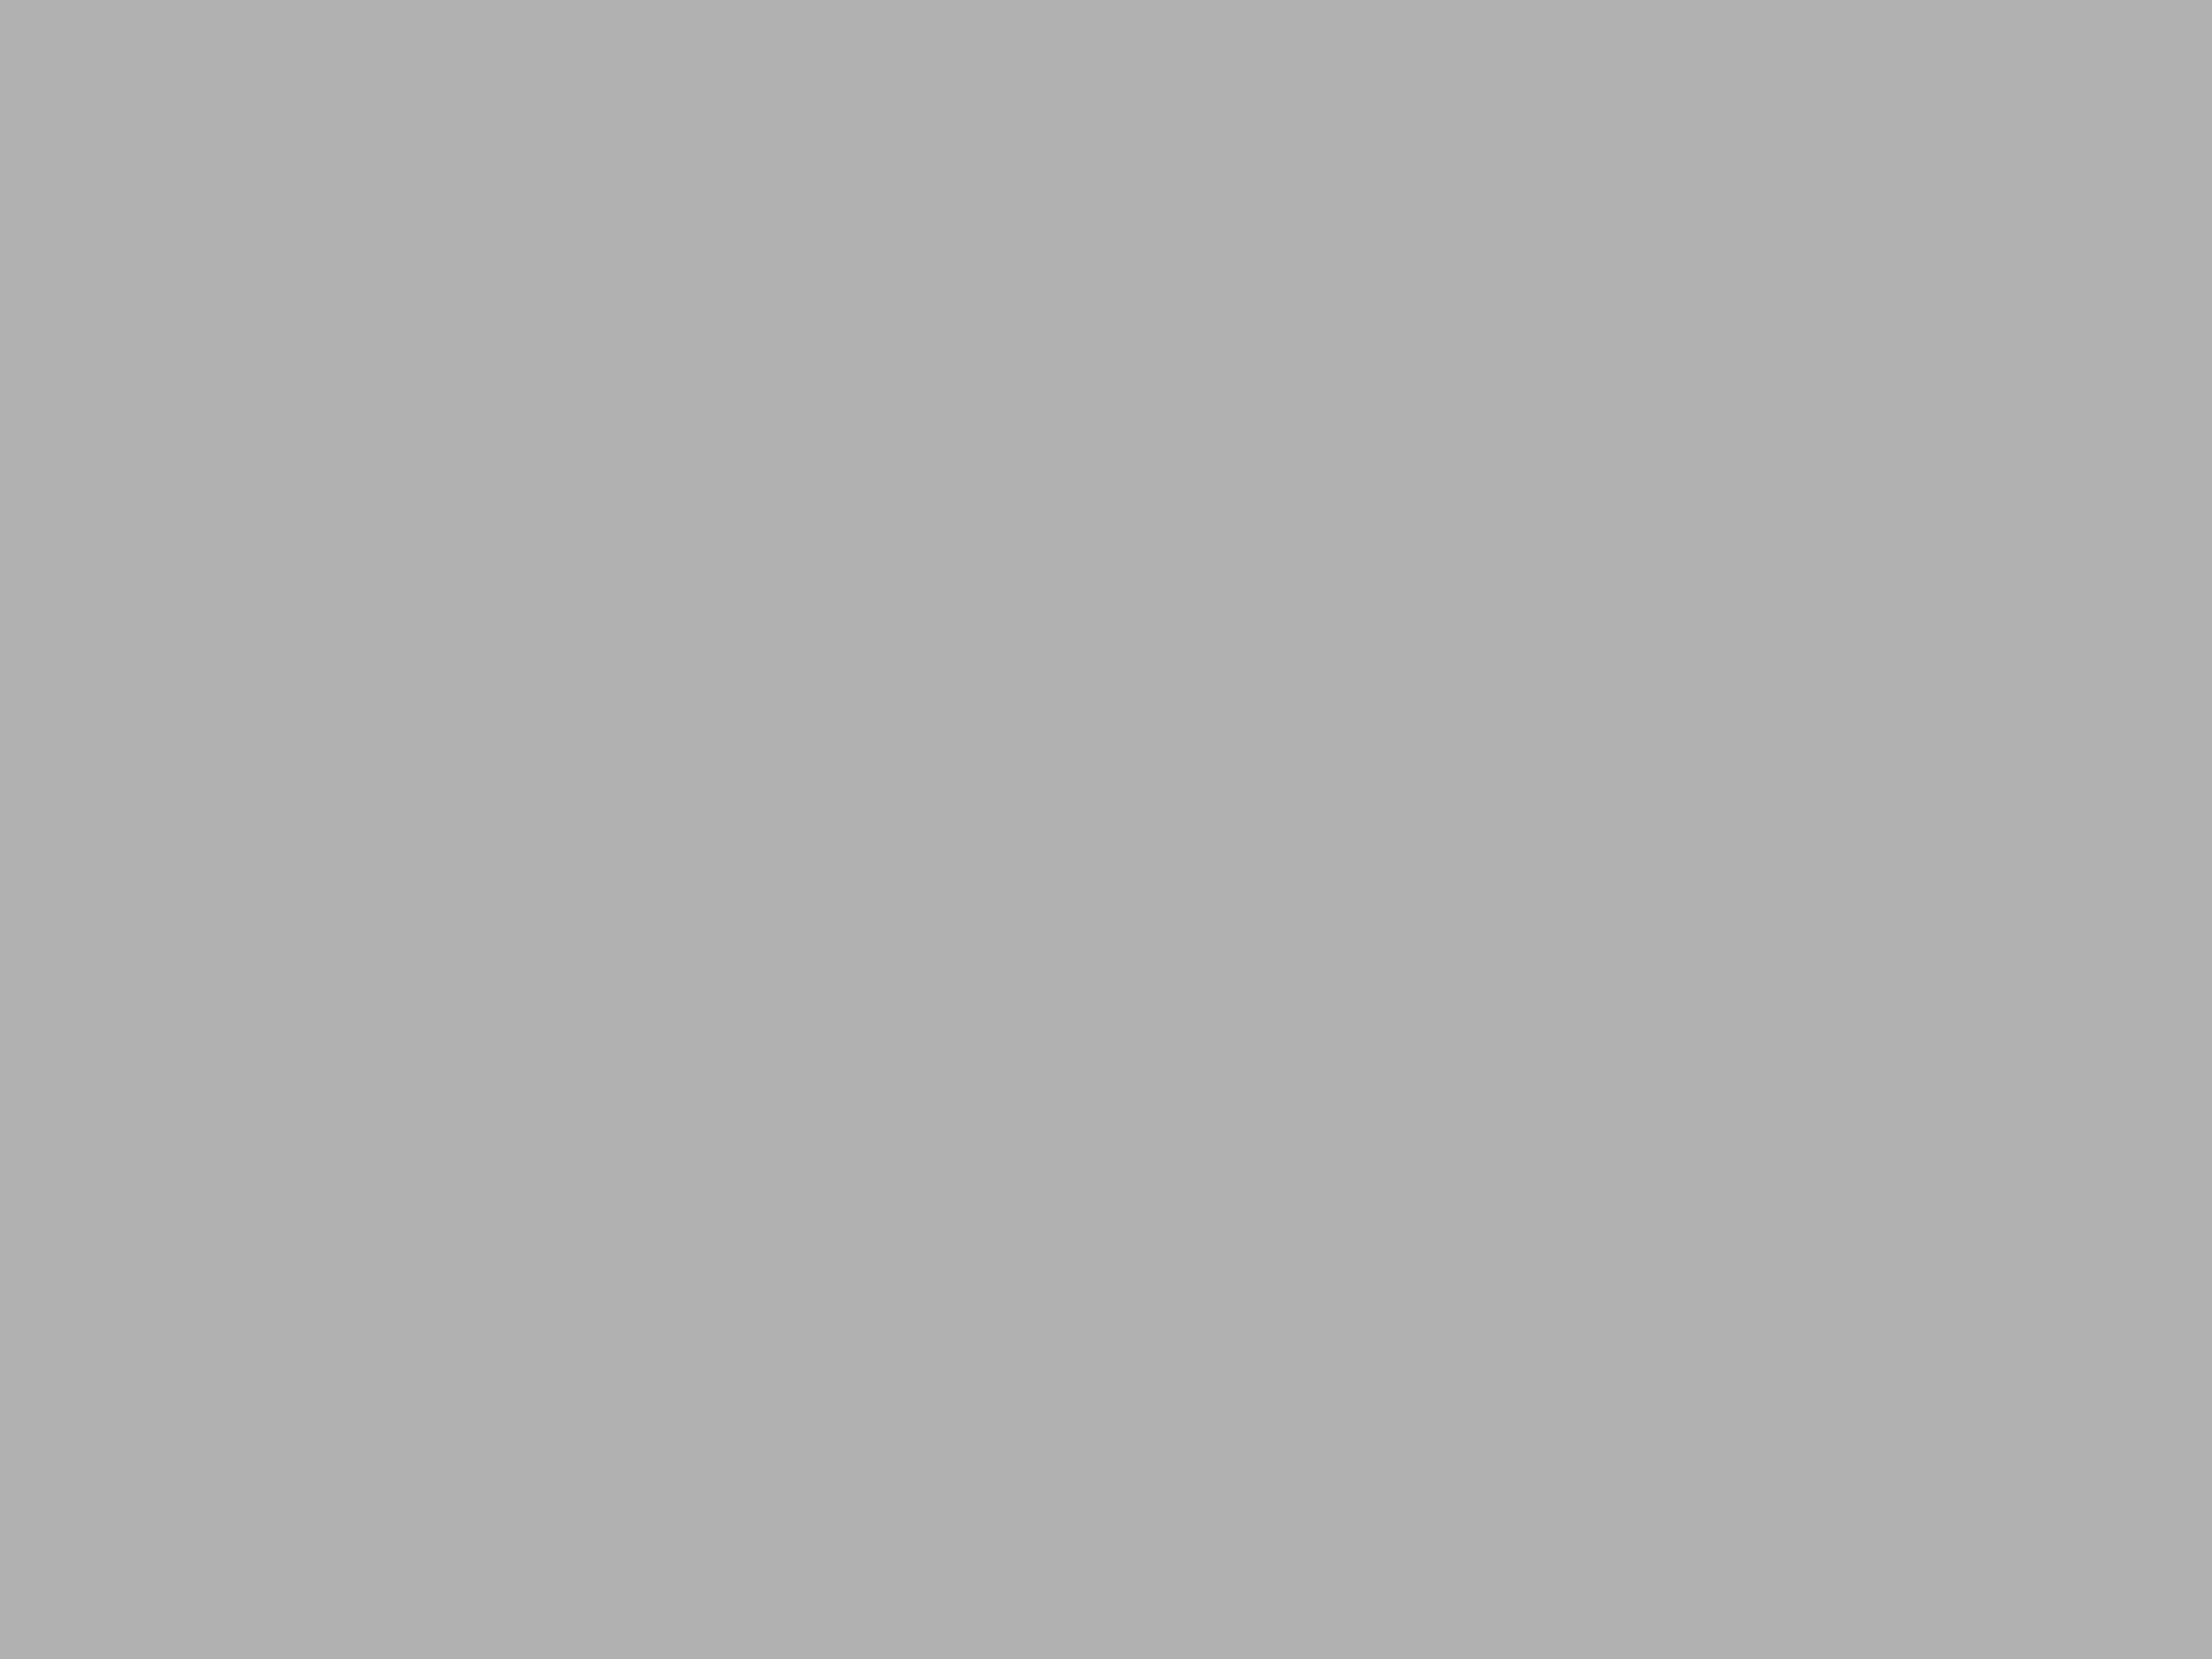 Страж старого Арбата. Дом с рыцарями. Москва. Архитектор Валентин Дубовской. 1913. Фотография: Андрей Соловьев / Фотохроника ТАСС